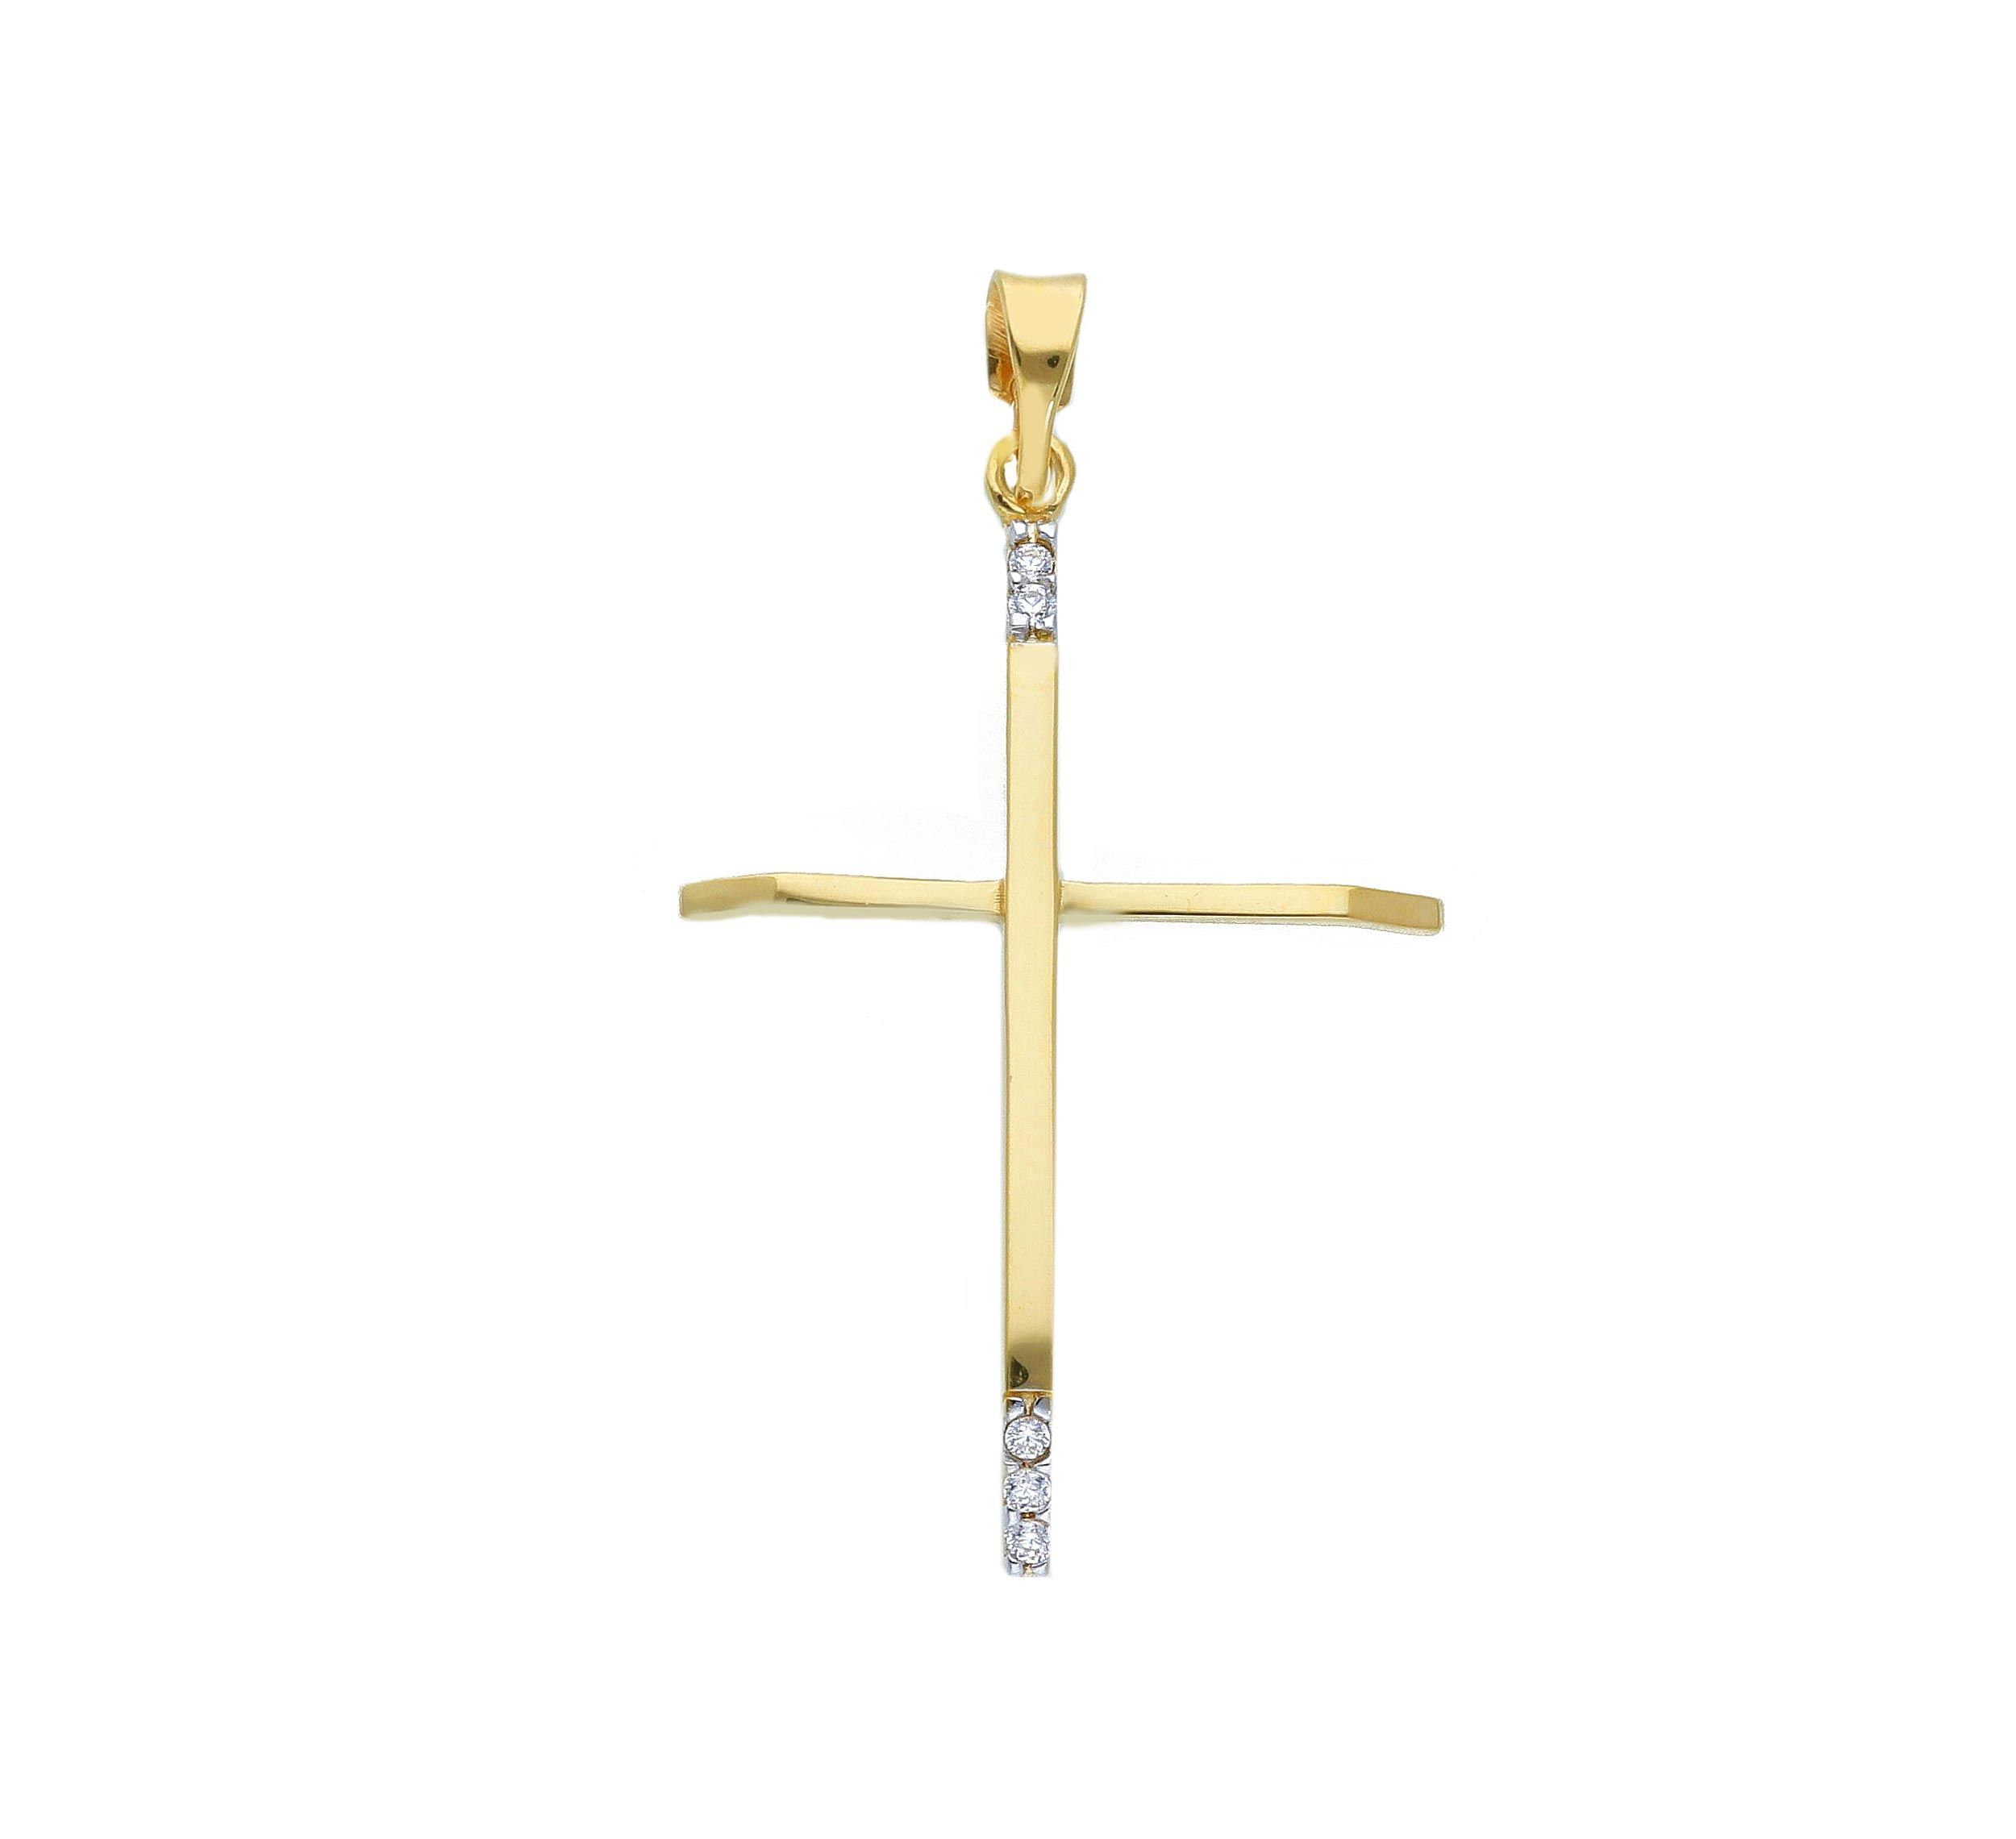 Σταυρός απο χρυσό κ14 λουστράτος  (code S250160)